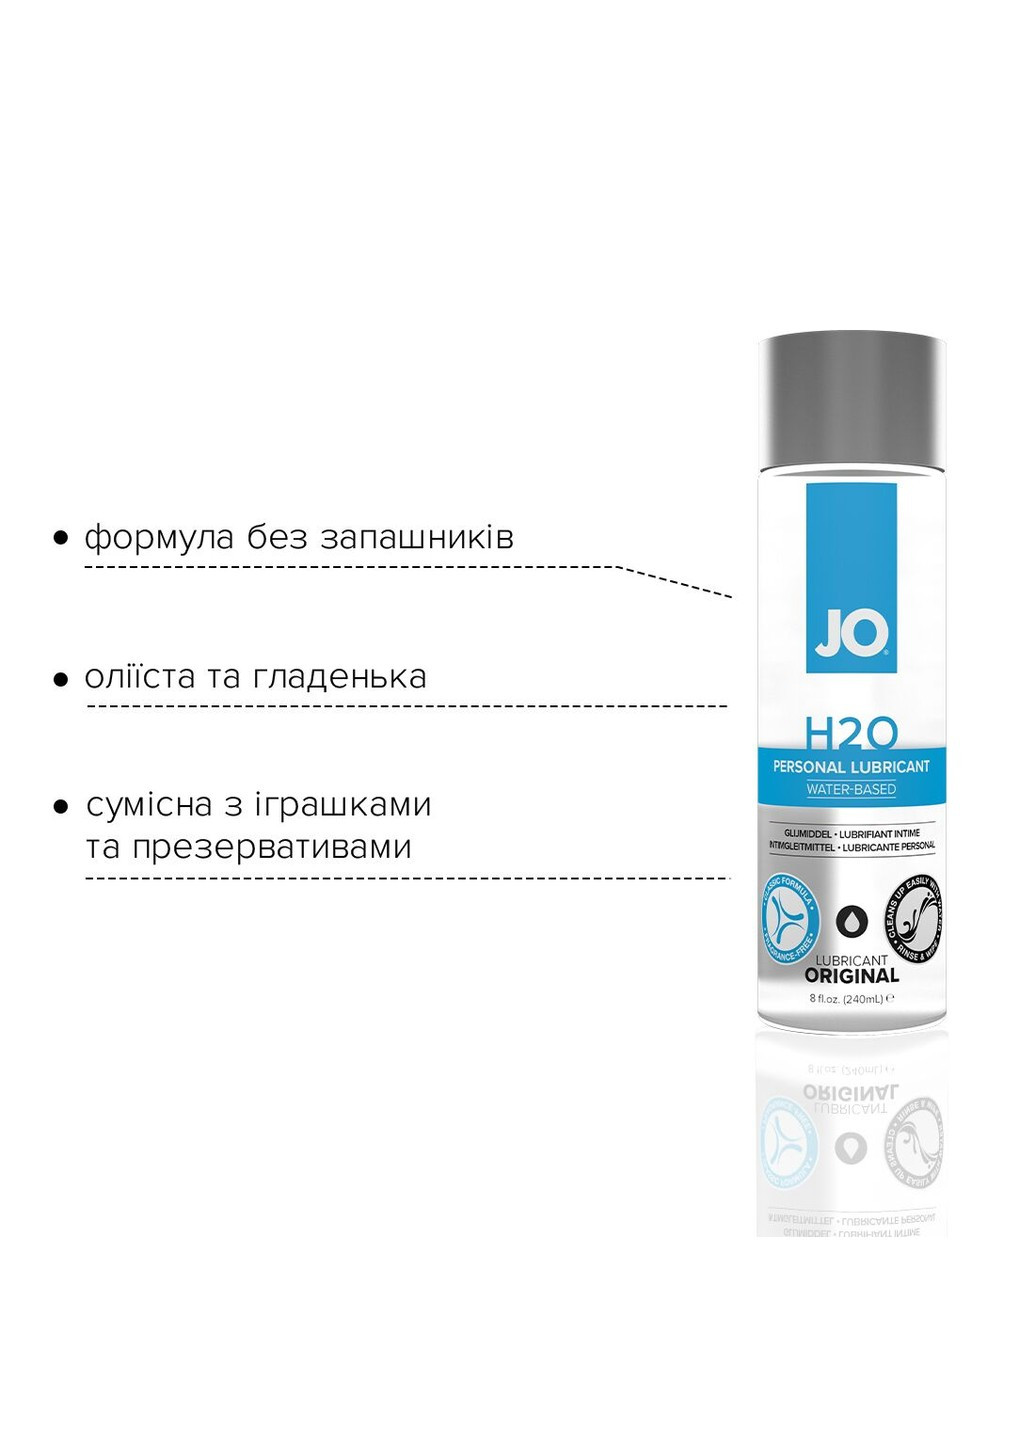 Змазка на водній основі H2O ORIGINAL (240 мл) оліїста і гладенька, рослинний гліцерин System JO (254583395)